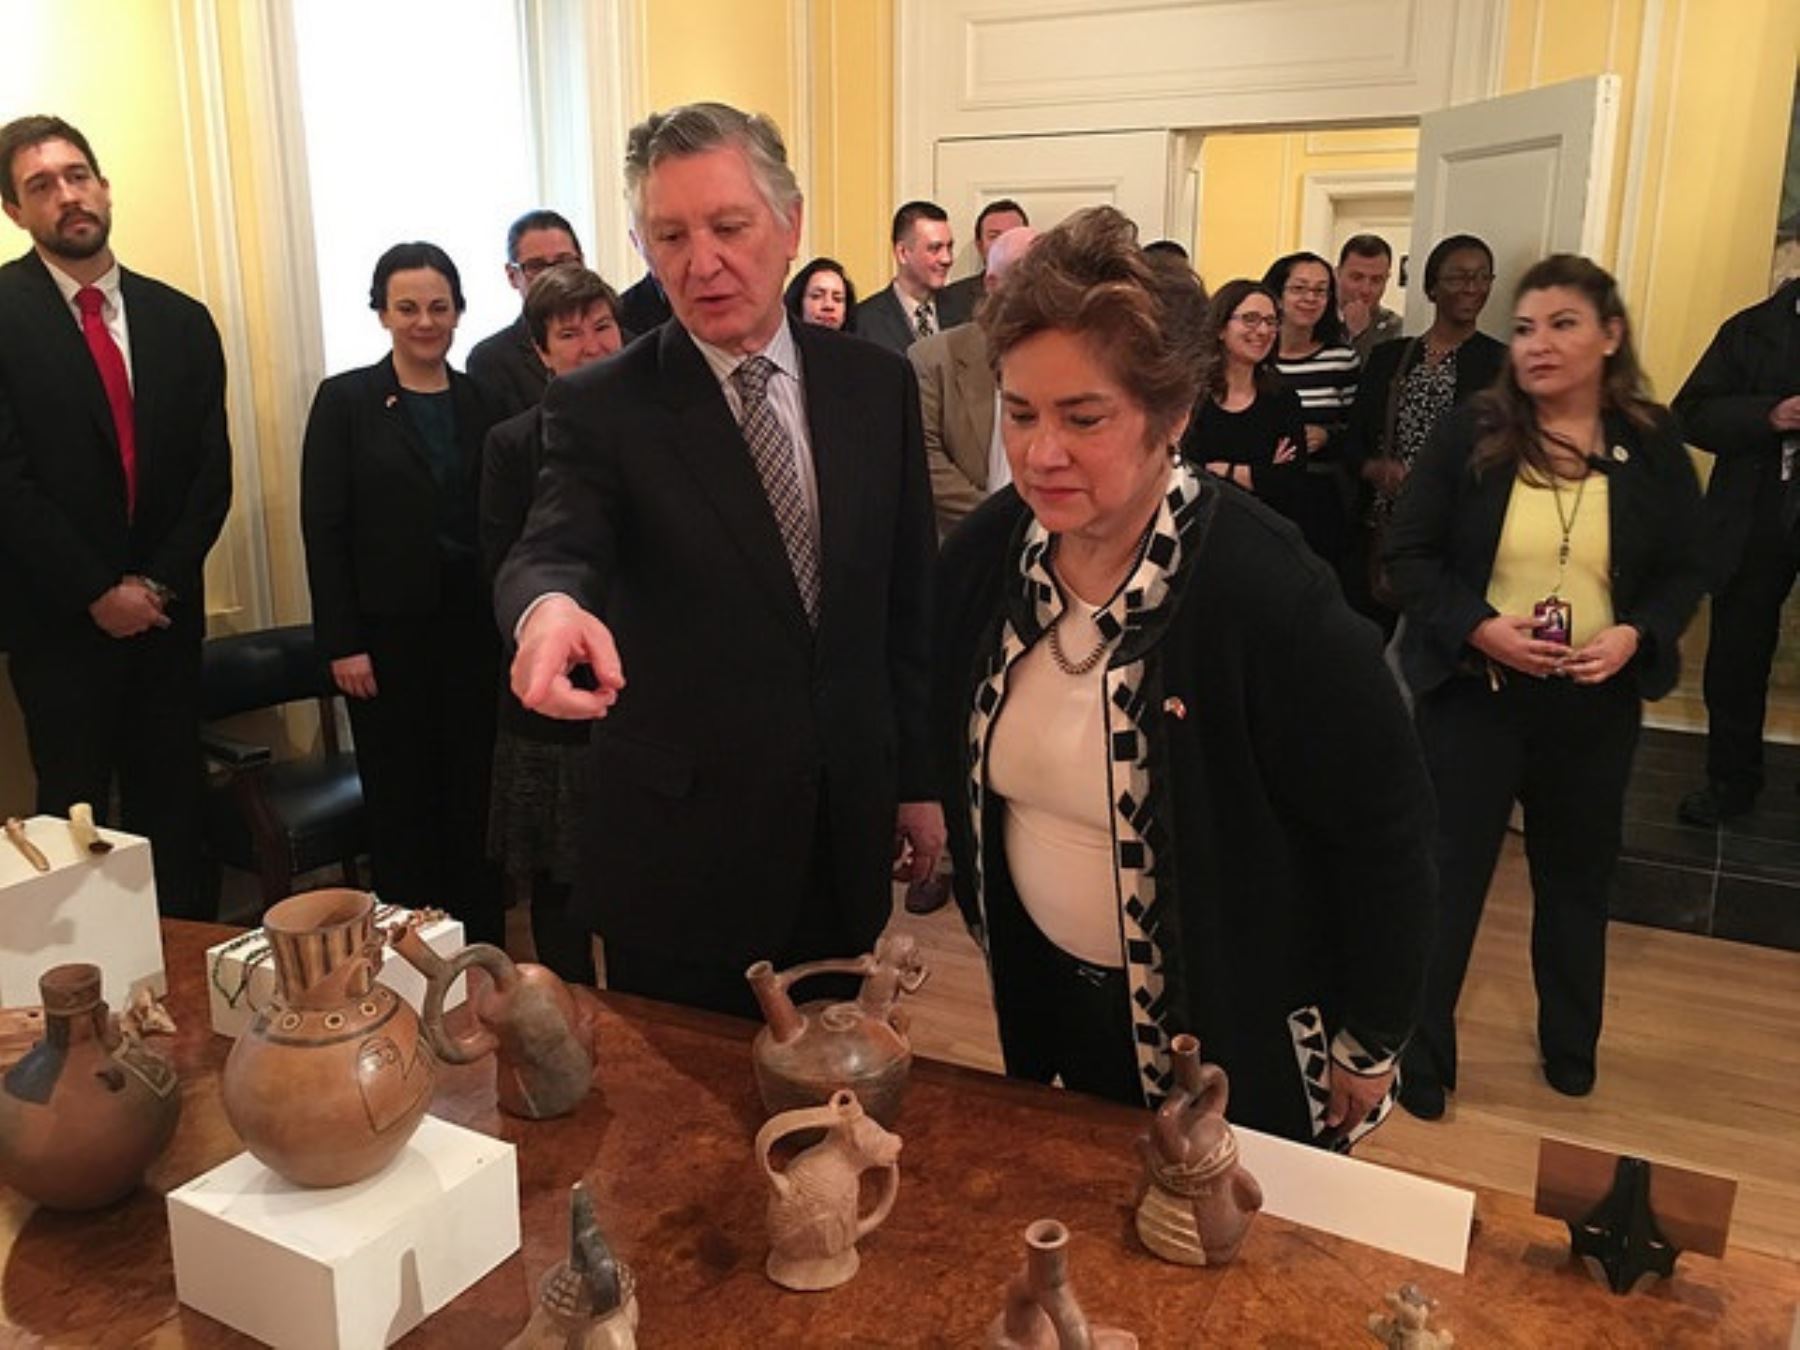 US returns cultural items to Peru